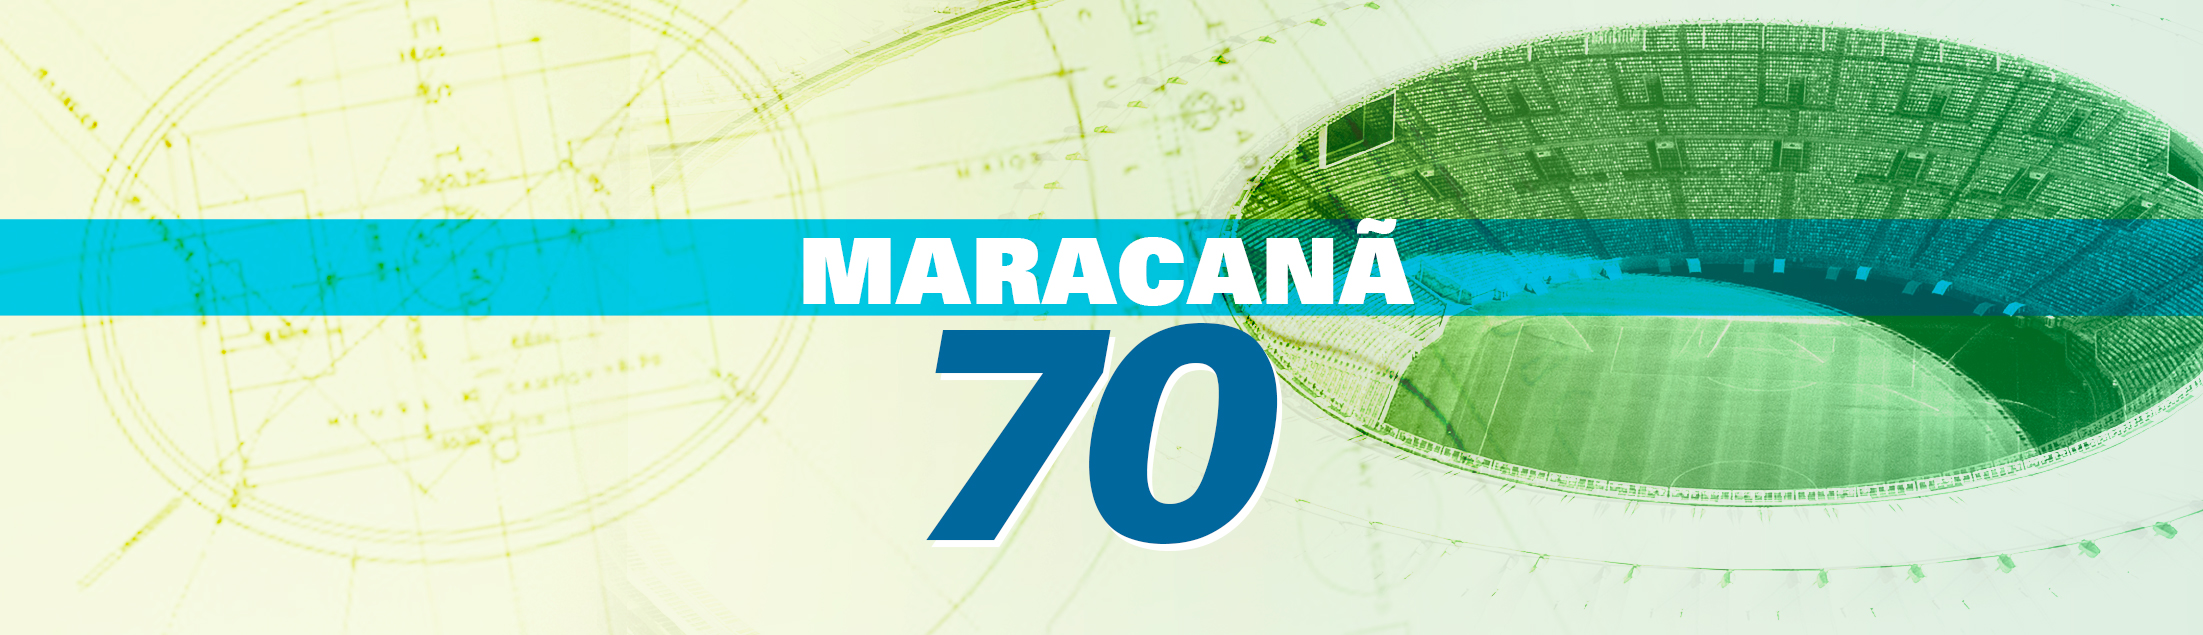 Maracanã, um setentão com muita música para cantar